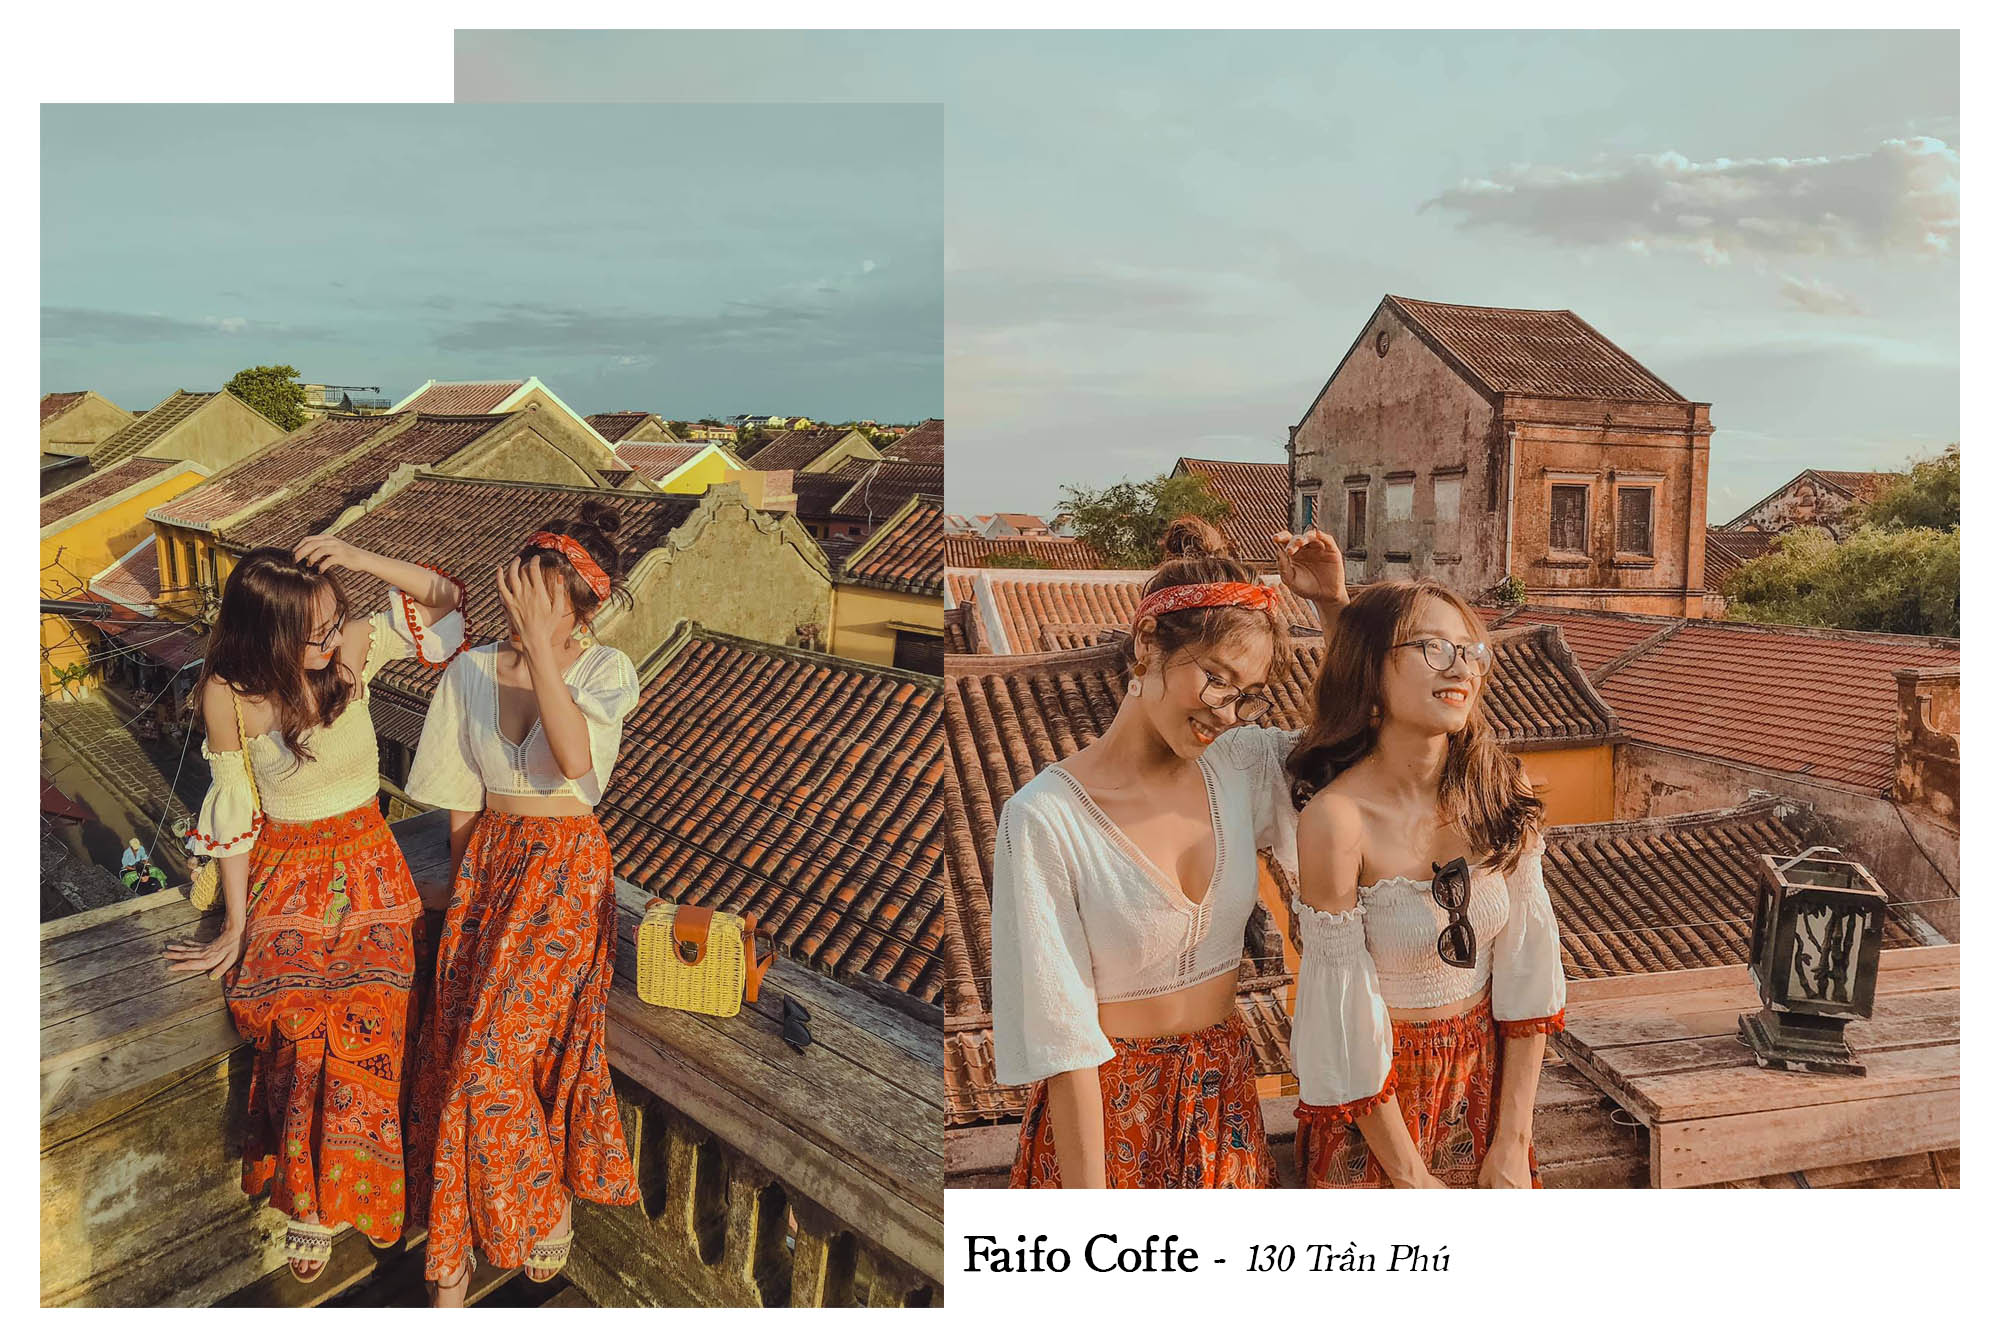 Faifo Coffee 130 Tran Phu Hoi An Review Chuyen Du Lich Hoi An Da Nang Cua 02 Co Ban Than Danangfantasticity Com